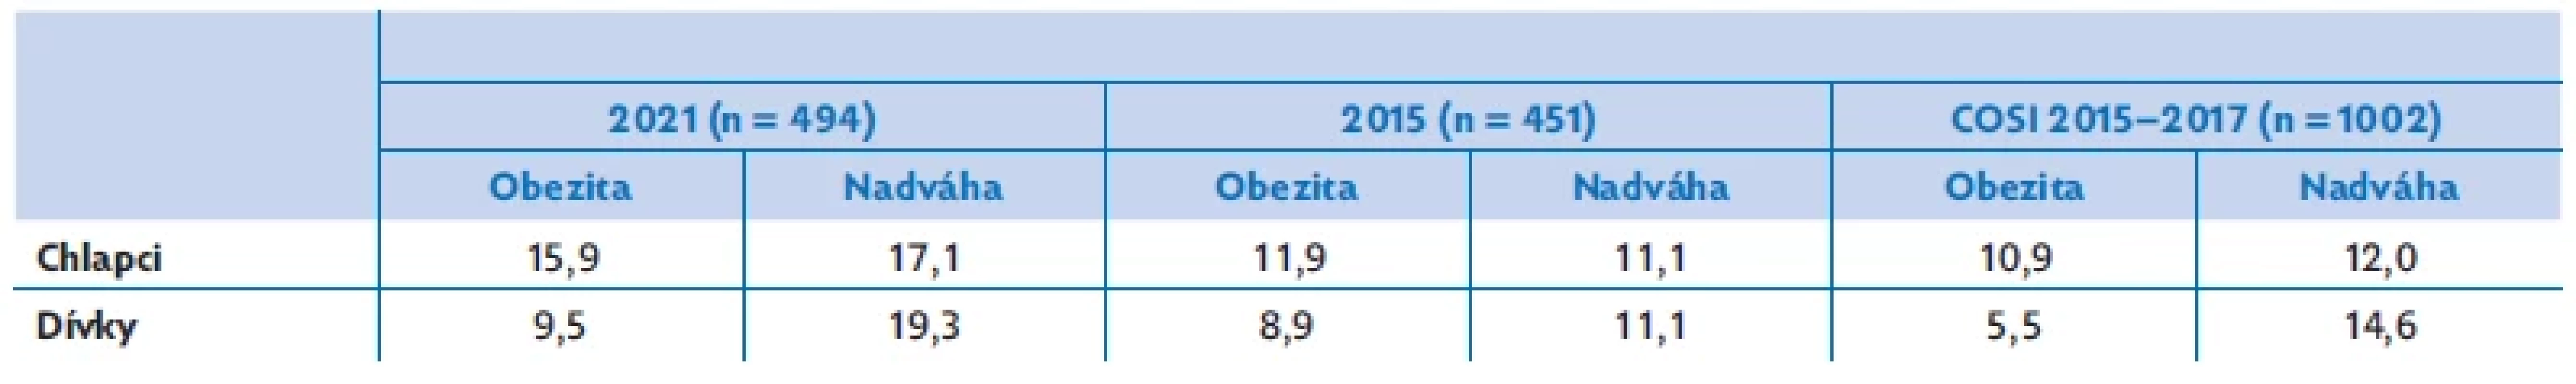 Porovnání výsledků prevalence nadváhy a obezity z let 2021 a 2015 z našeho soboru s výsledky výzkumu COSI 2015–2017